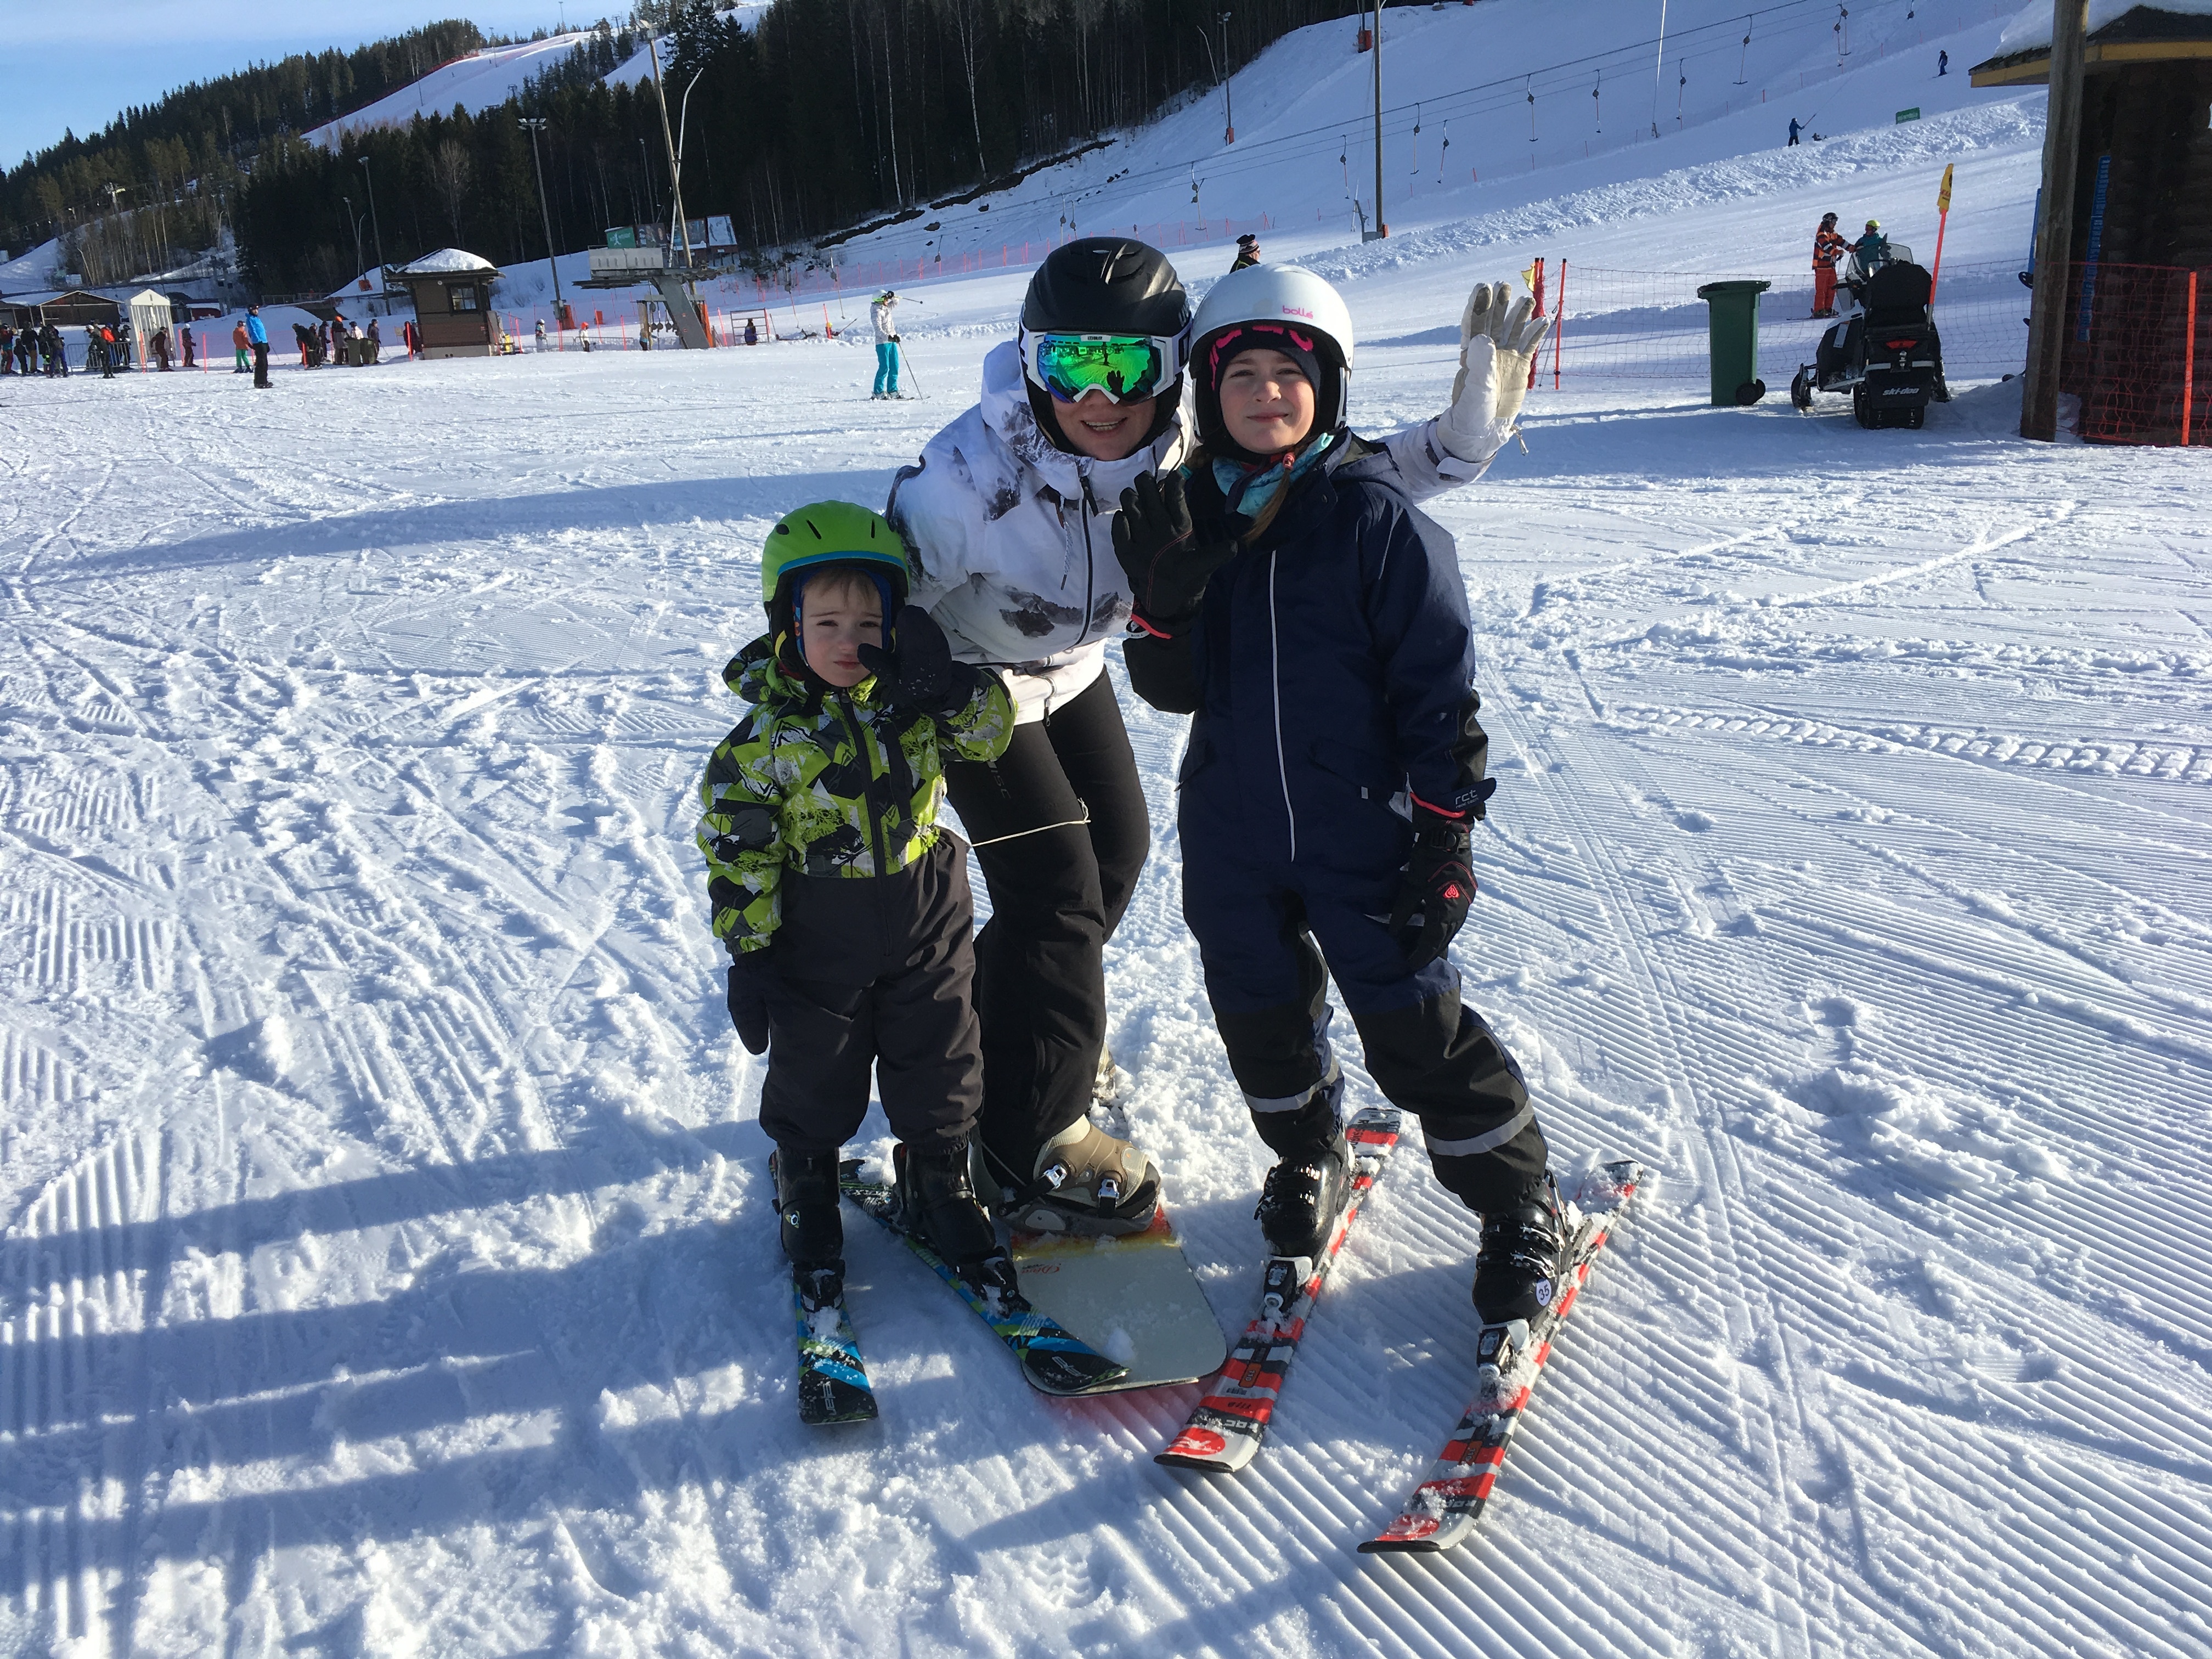 Triin Hertmann at a ski resort with her children